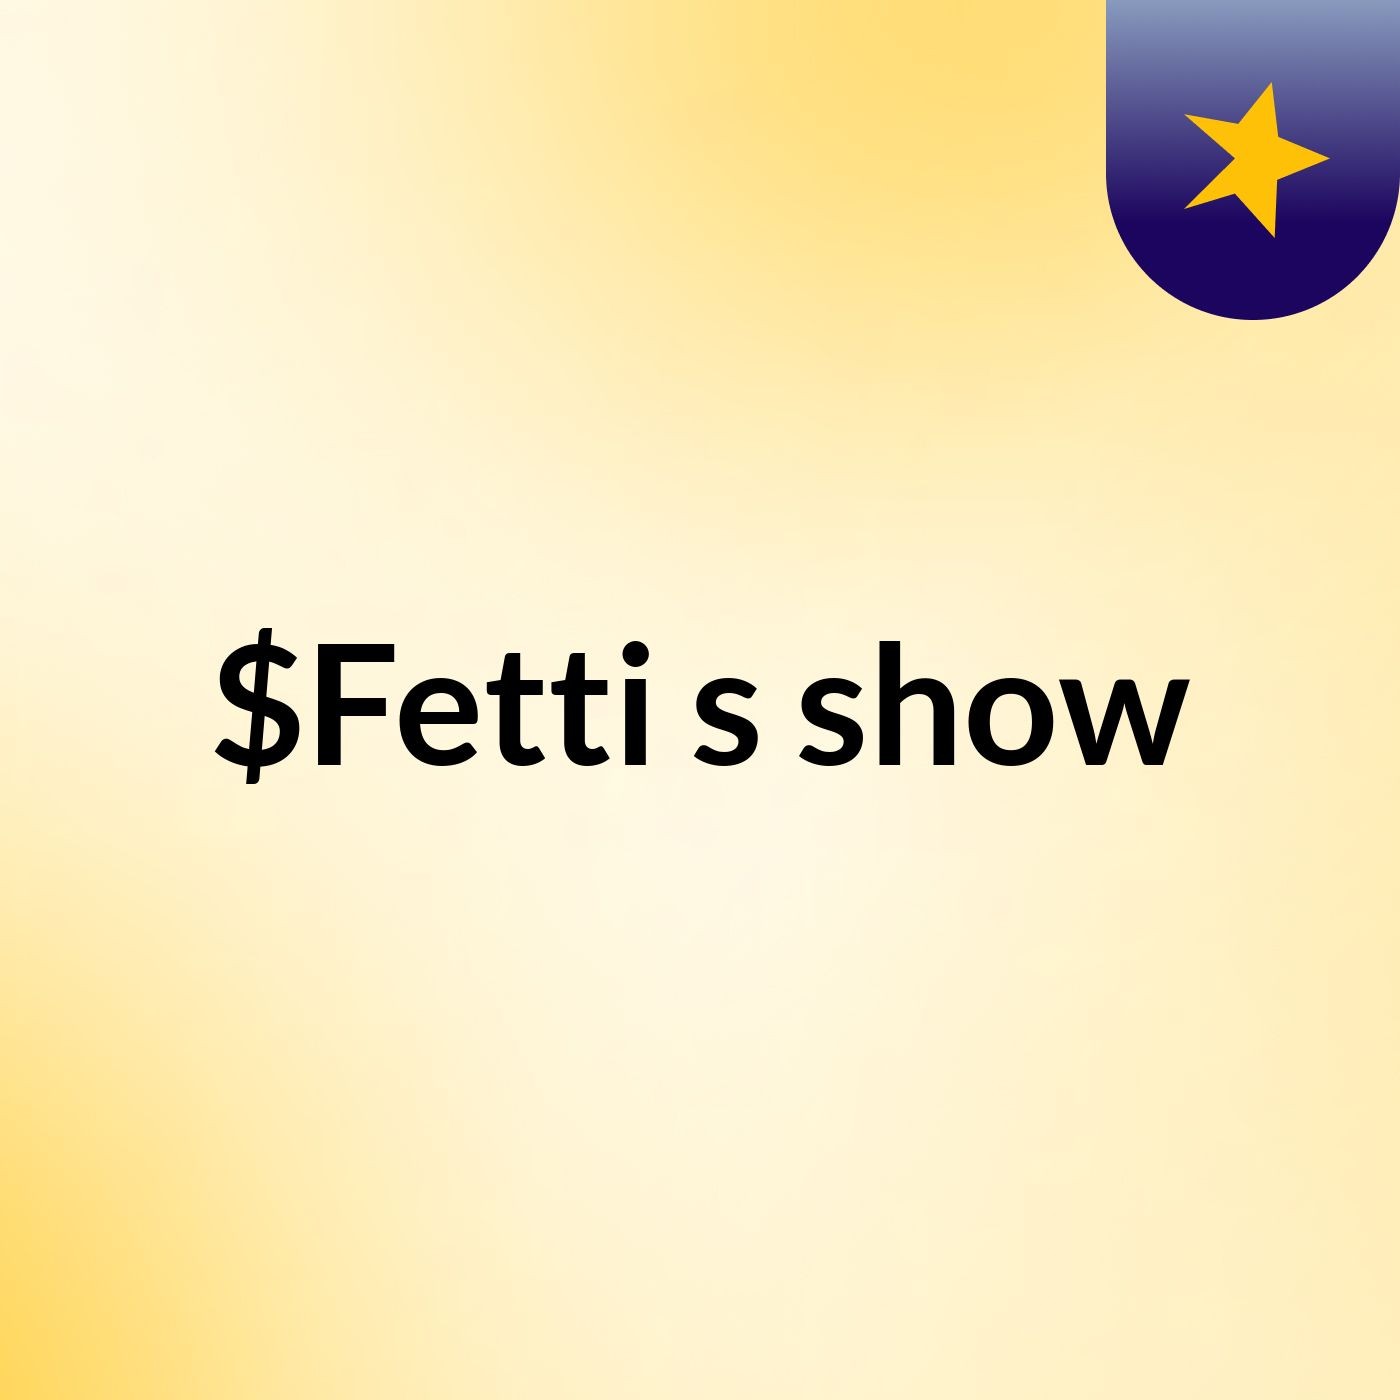 $Fetti's show